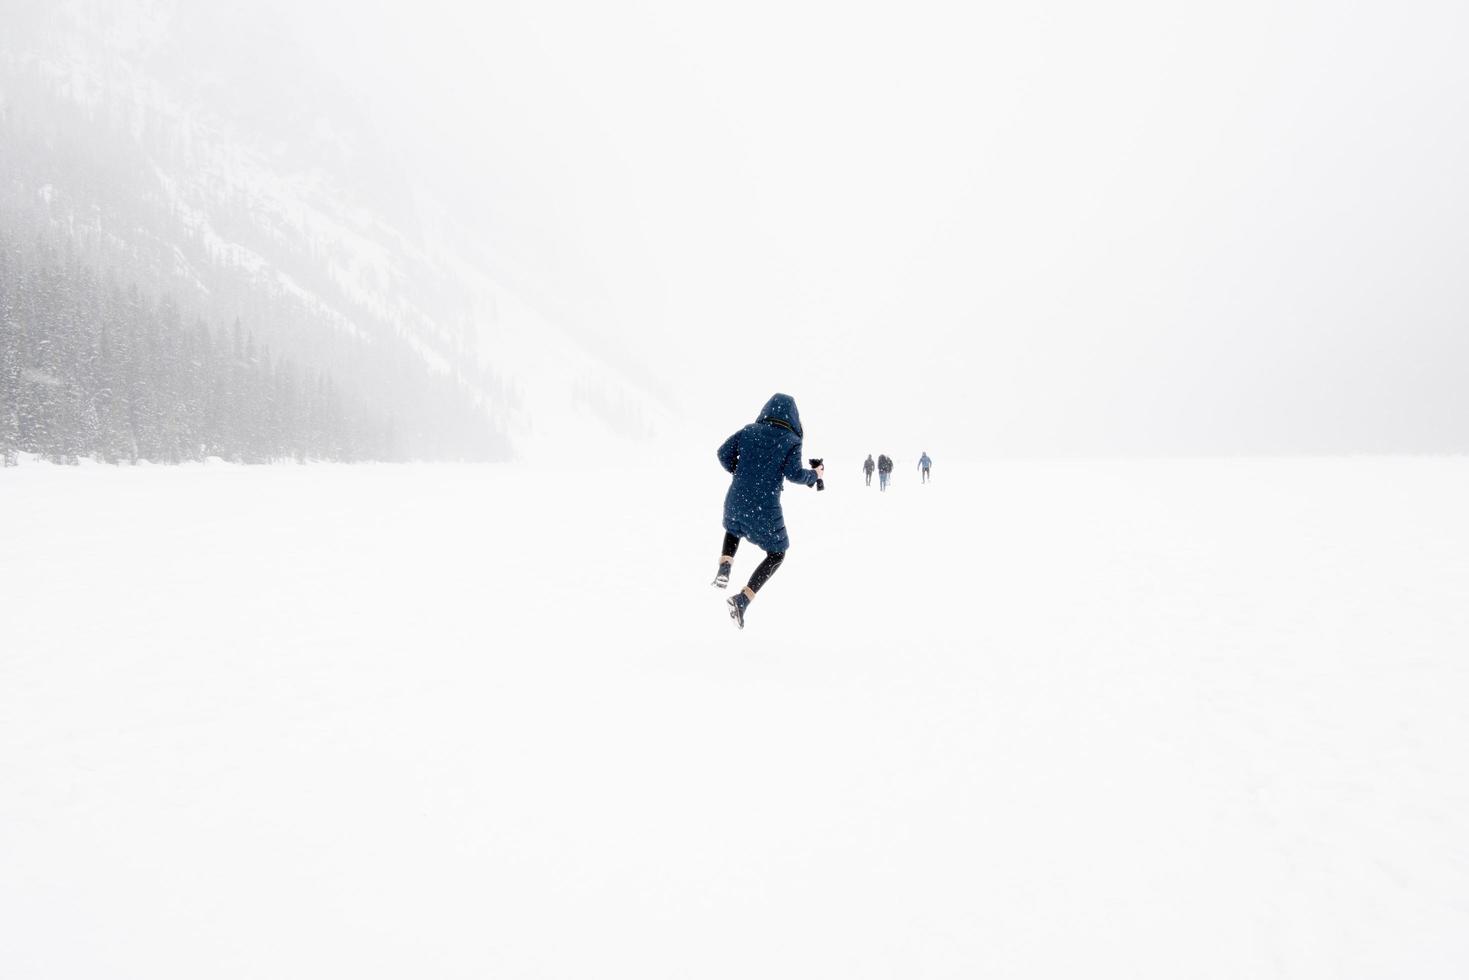 joven saltando en el aire en un paisaje invernal con nieve. Lago congelado Louise, Parque Nacional Banff, Canadá foto